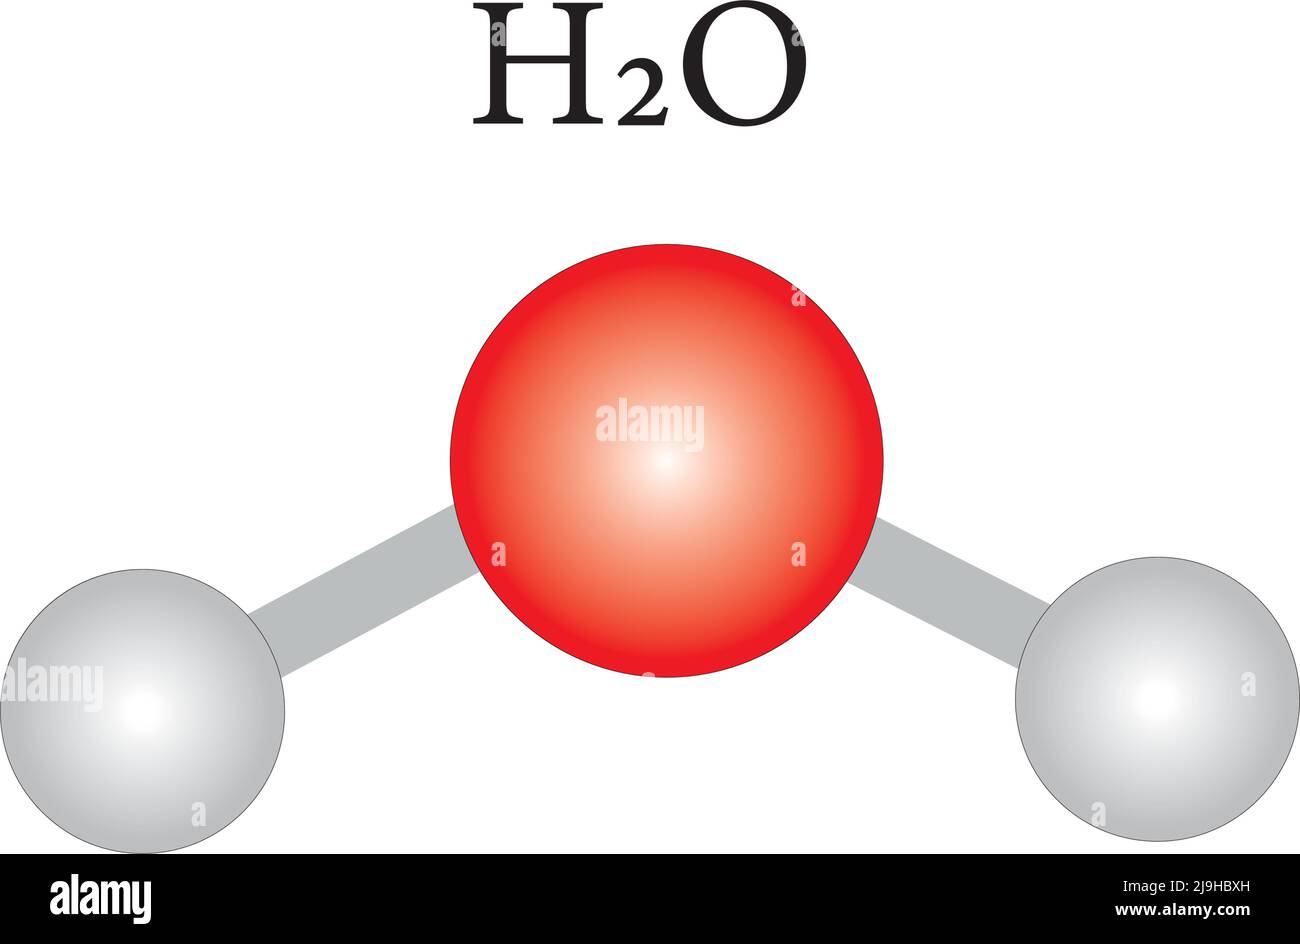 Water H2O formula chimica strutturale e modello molecolare.contenuto didattico per studenti di chimica e scienza.illustrazione vettoriale. Illustrazione Vettoriale